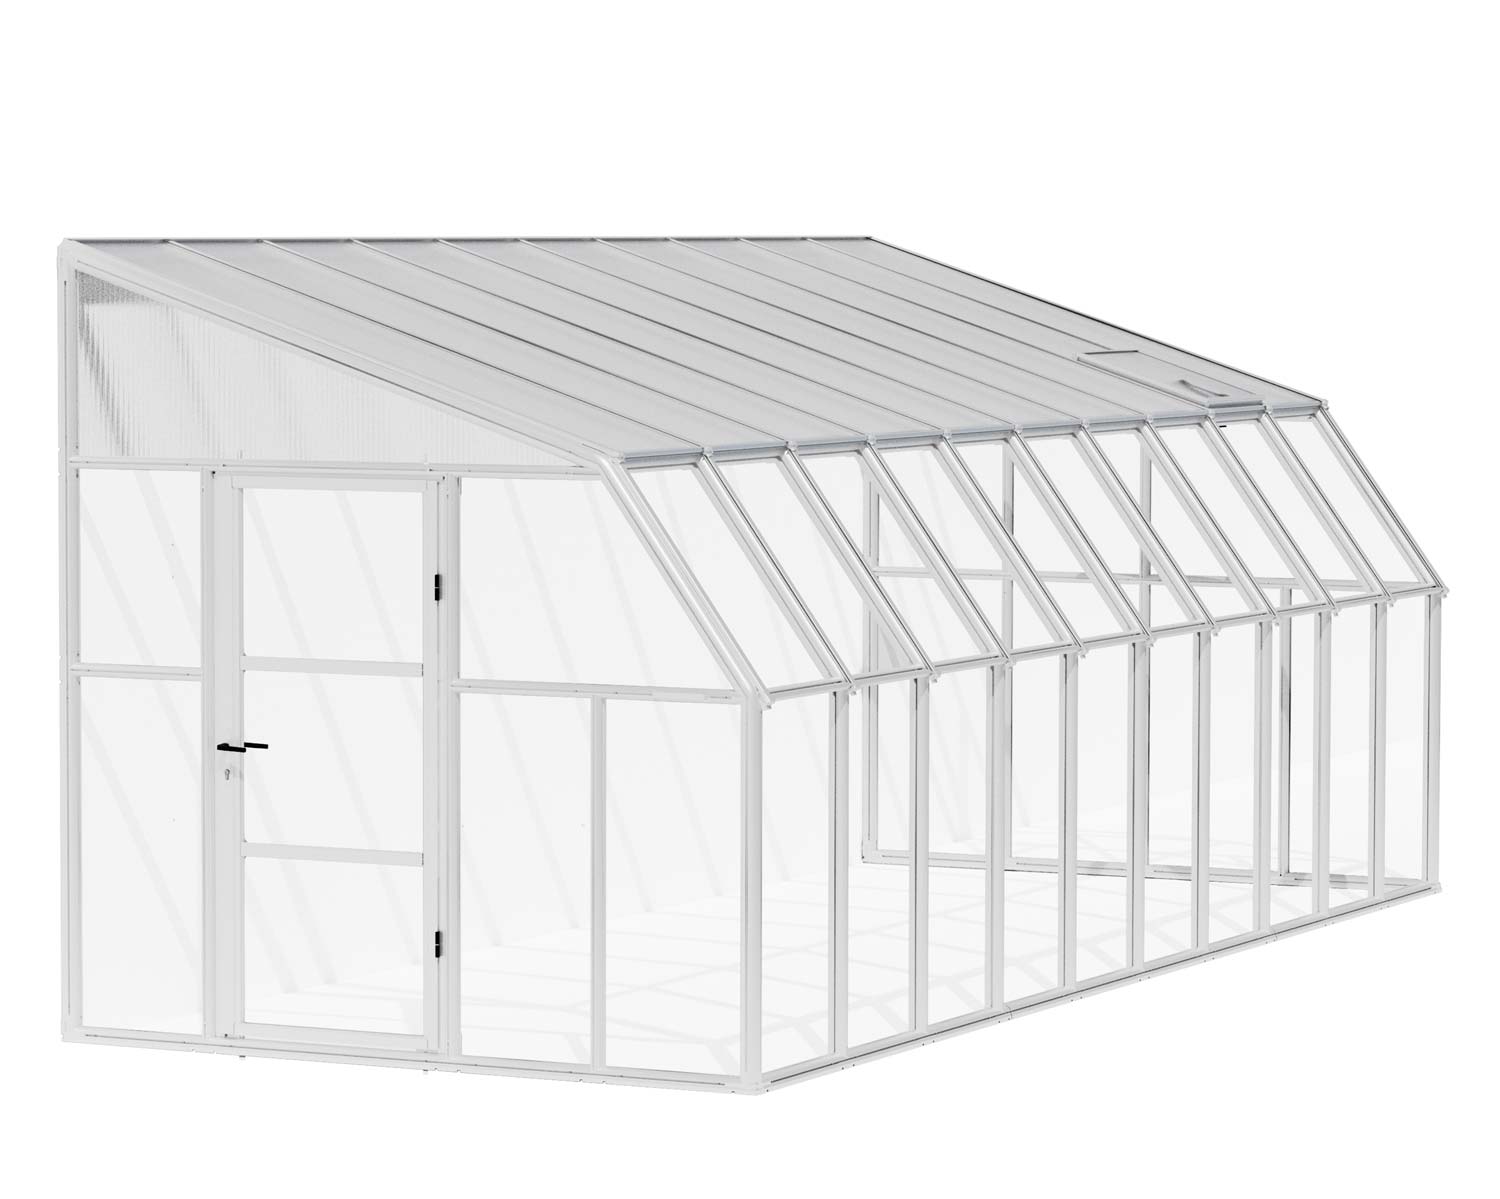 Solarium SunRoom Kit 8 ft. x 20 ft. White Structure & Hybrid Glazing